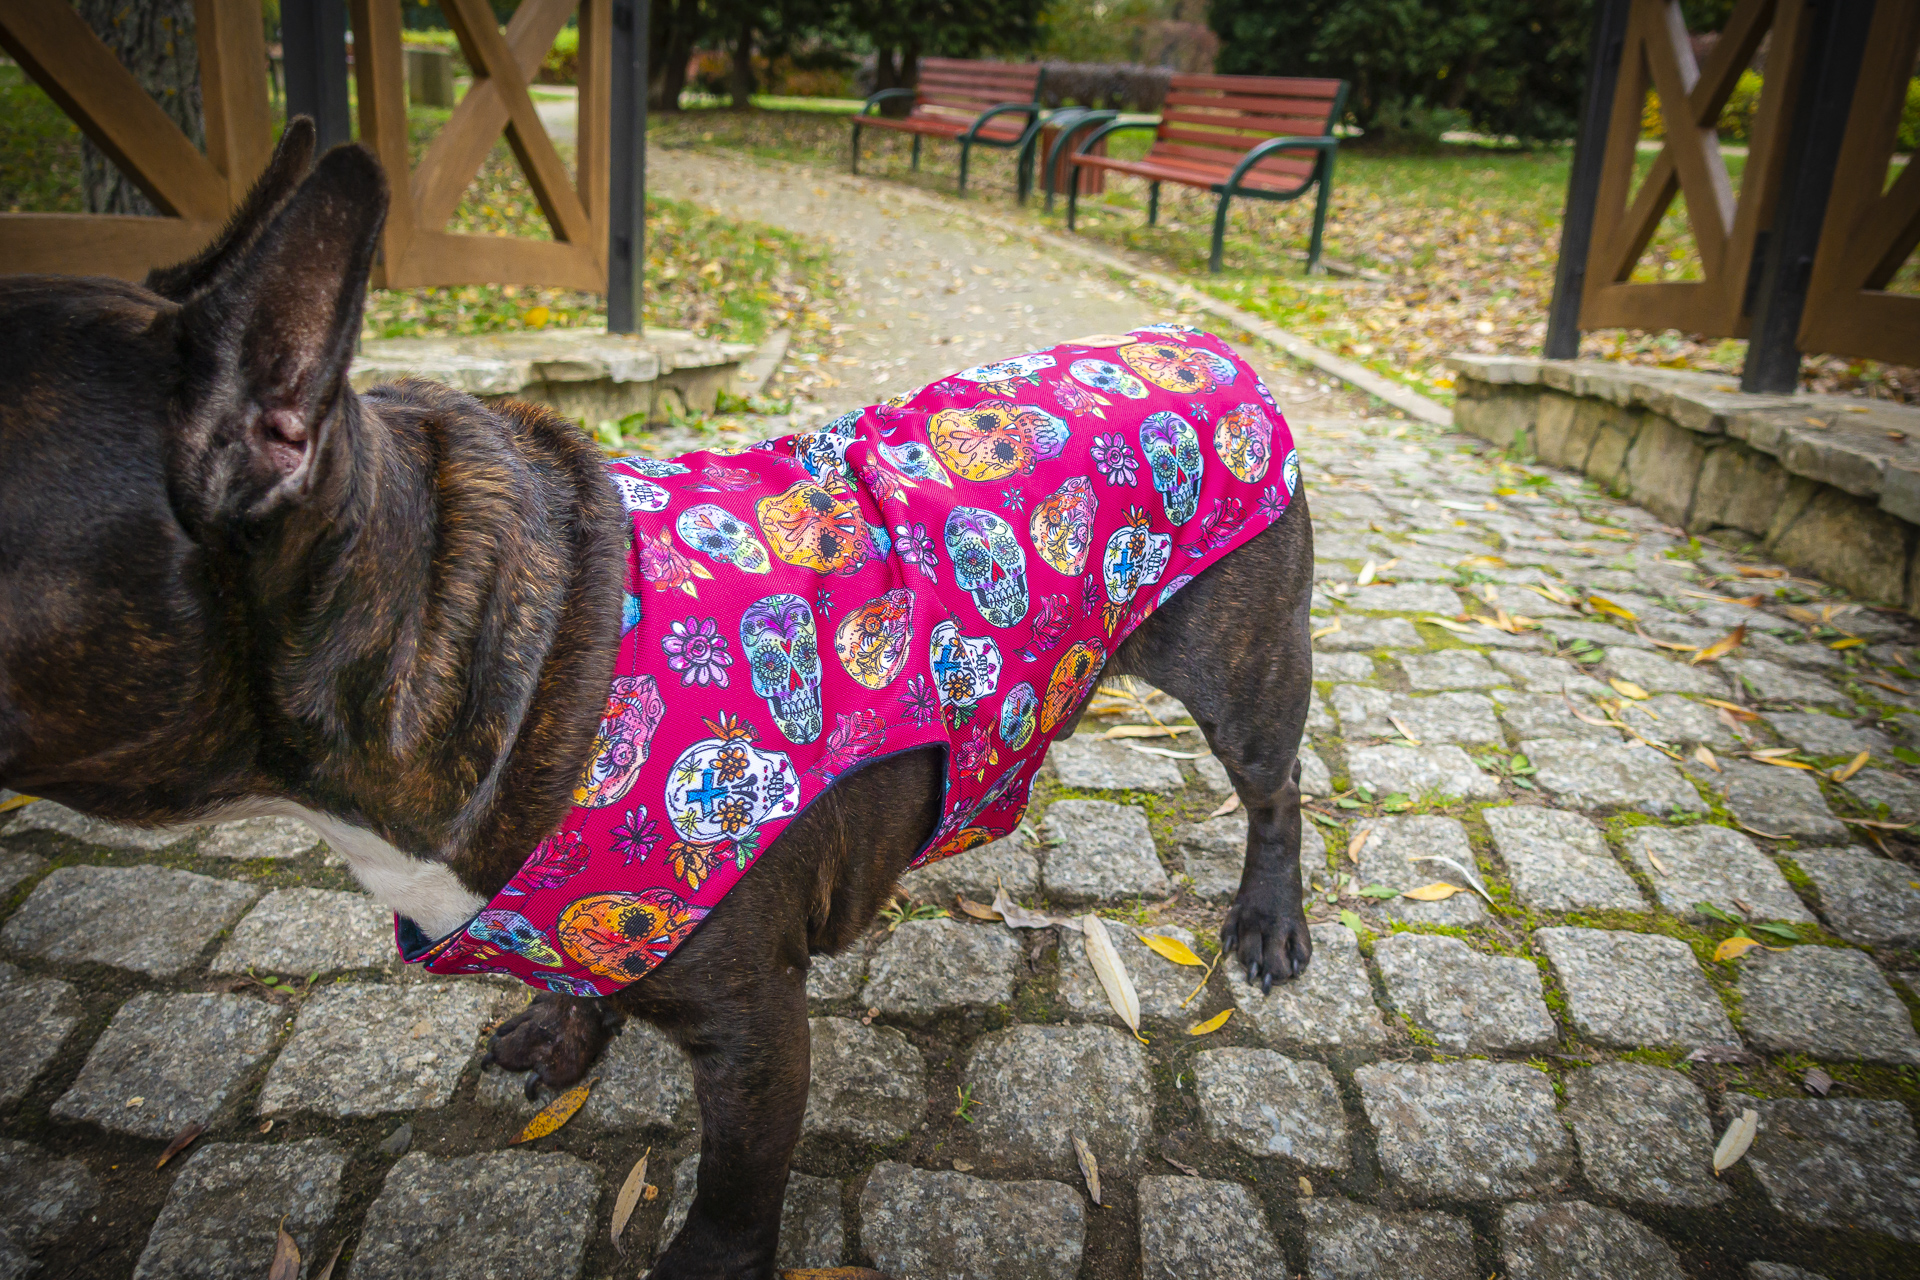 Kurtka przeciwdeszczowa dla psa marki Frenczi. Zdjęcie ubranka dla psa na miarę. Wzór Dia de los Muertos